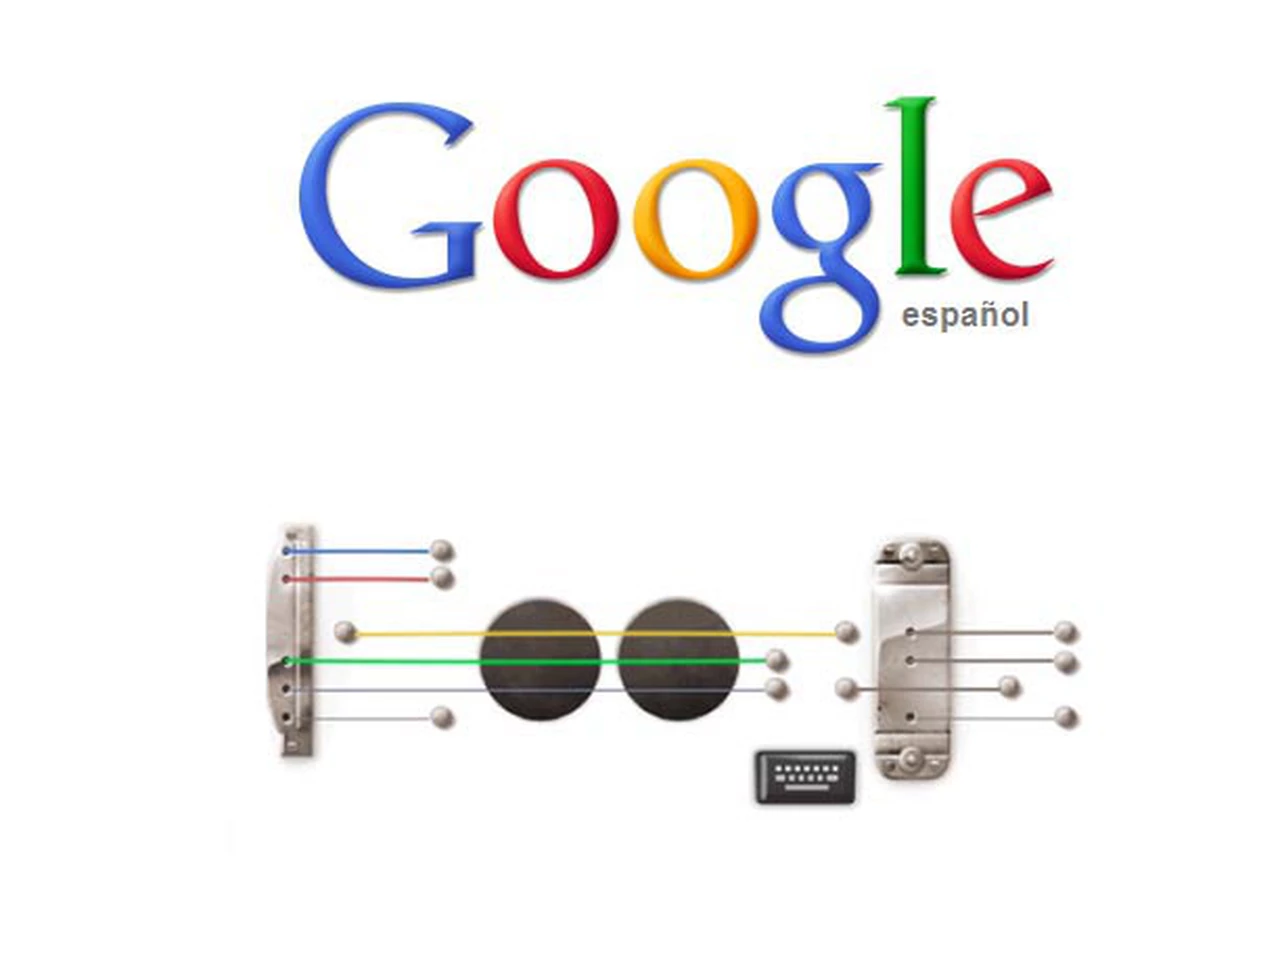 El logo con la guitarrita de Google le costó u$s270 millones a las empresas